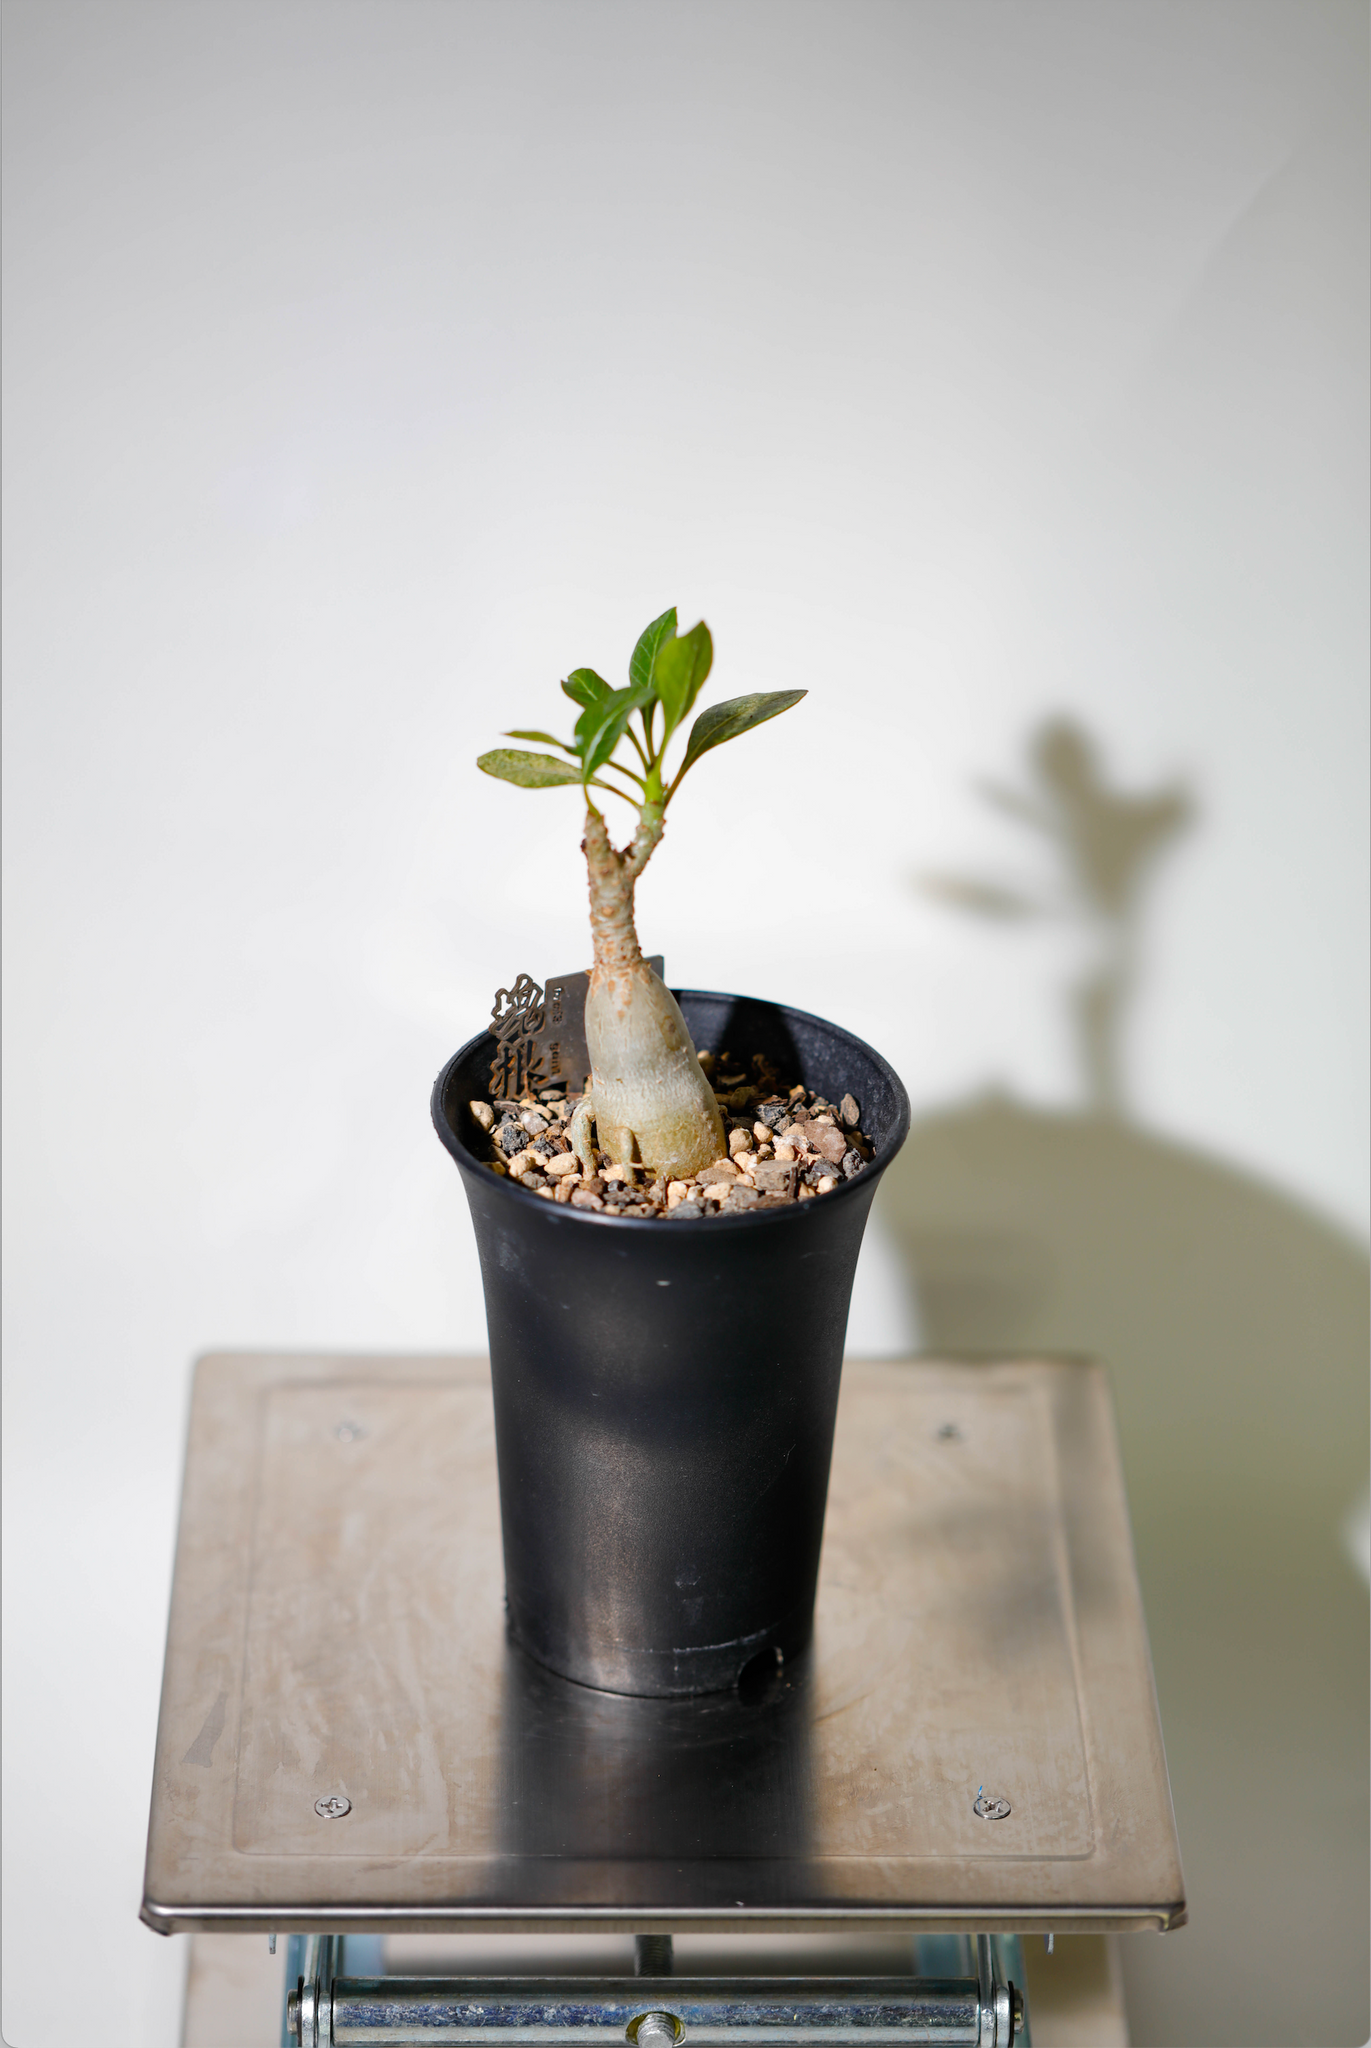 索科特拉沙漠玫瑰(Adenium socotranum) AS008